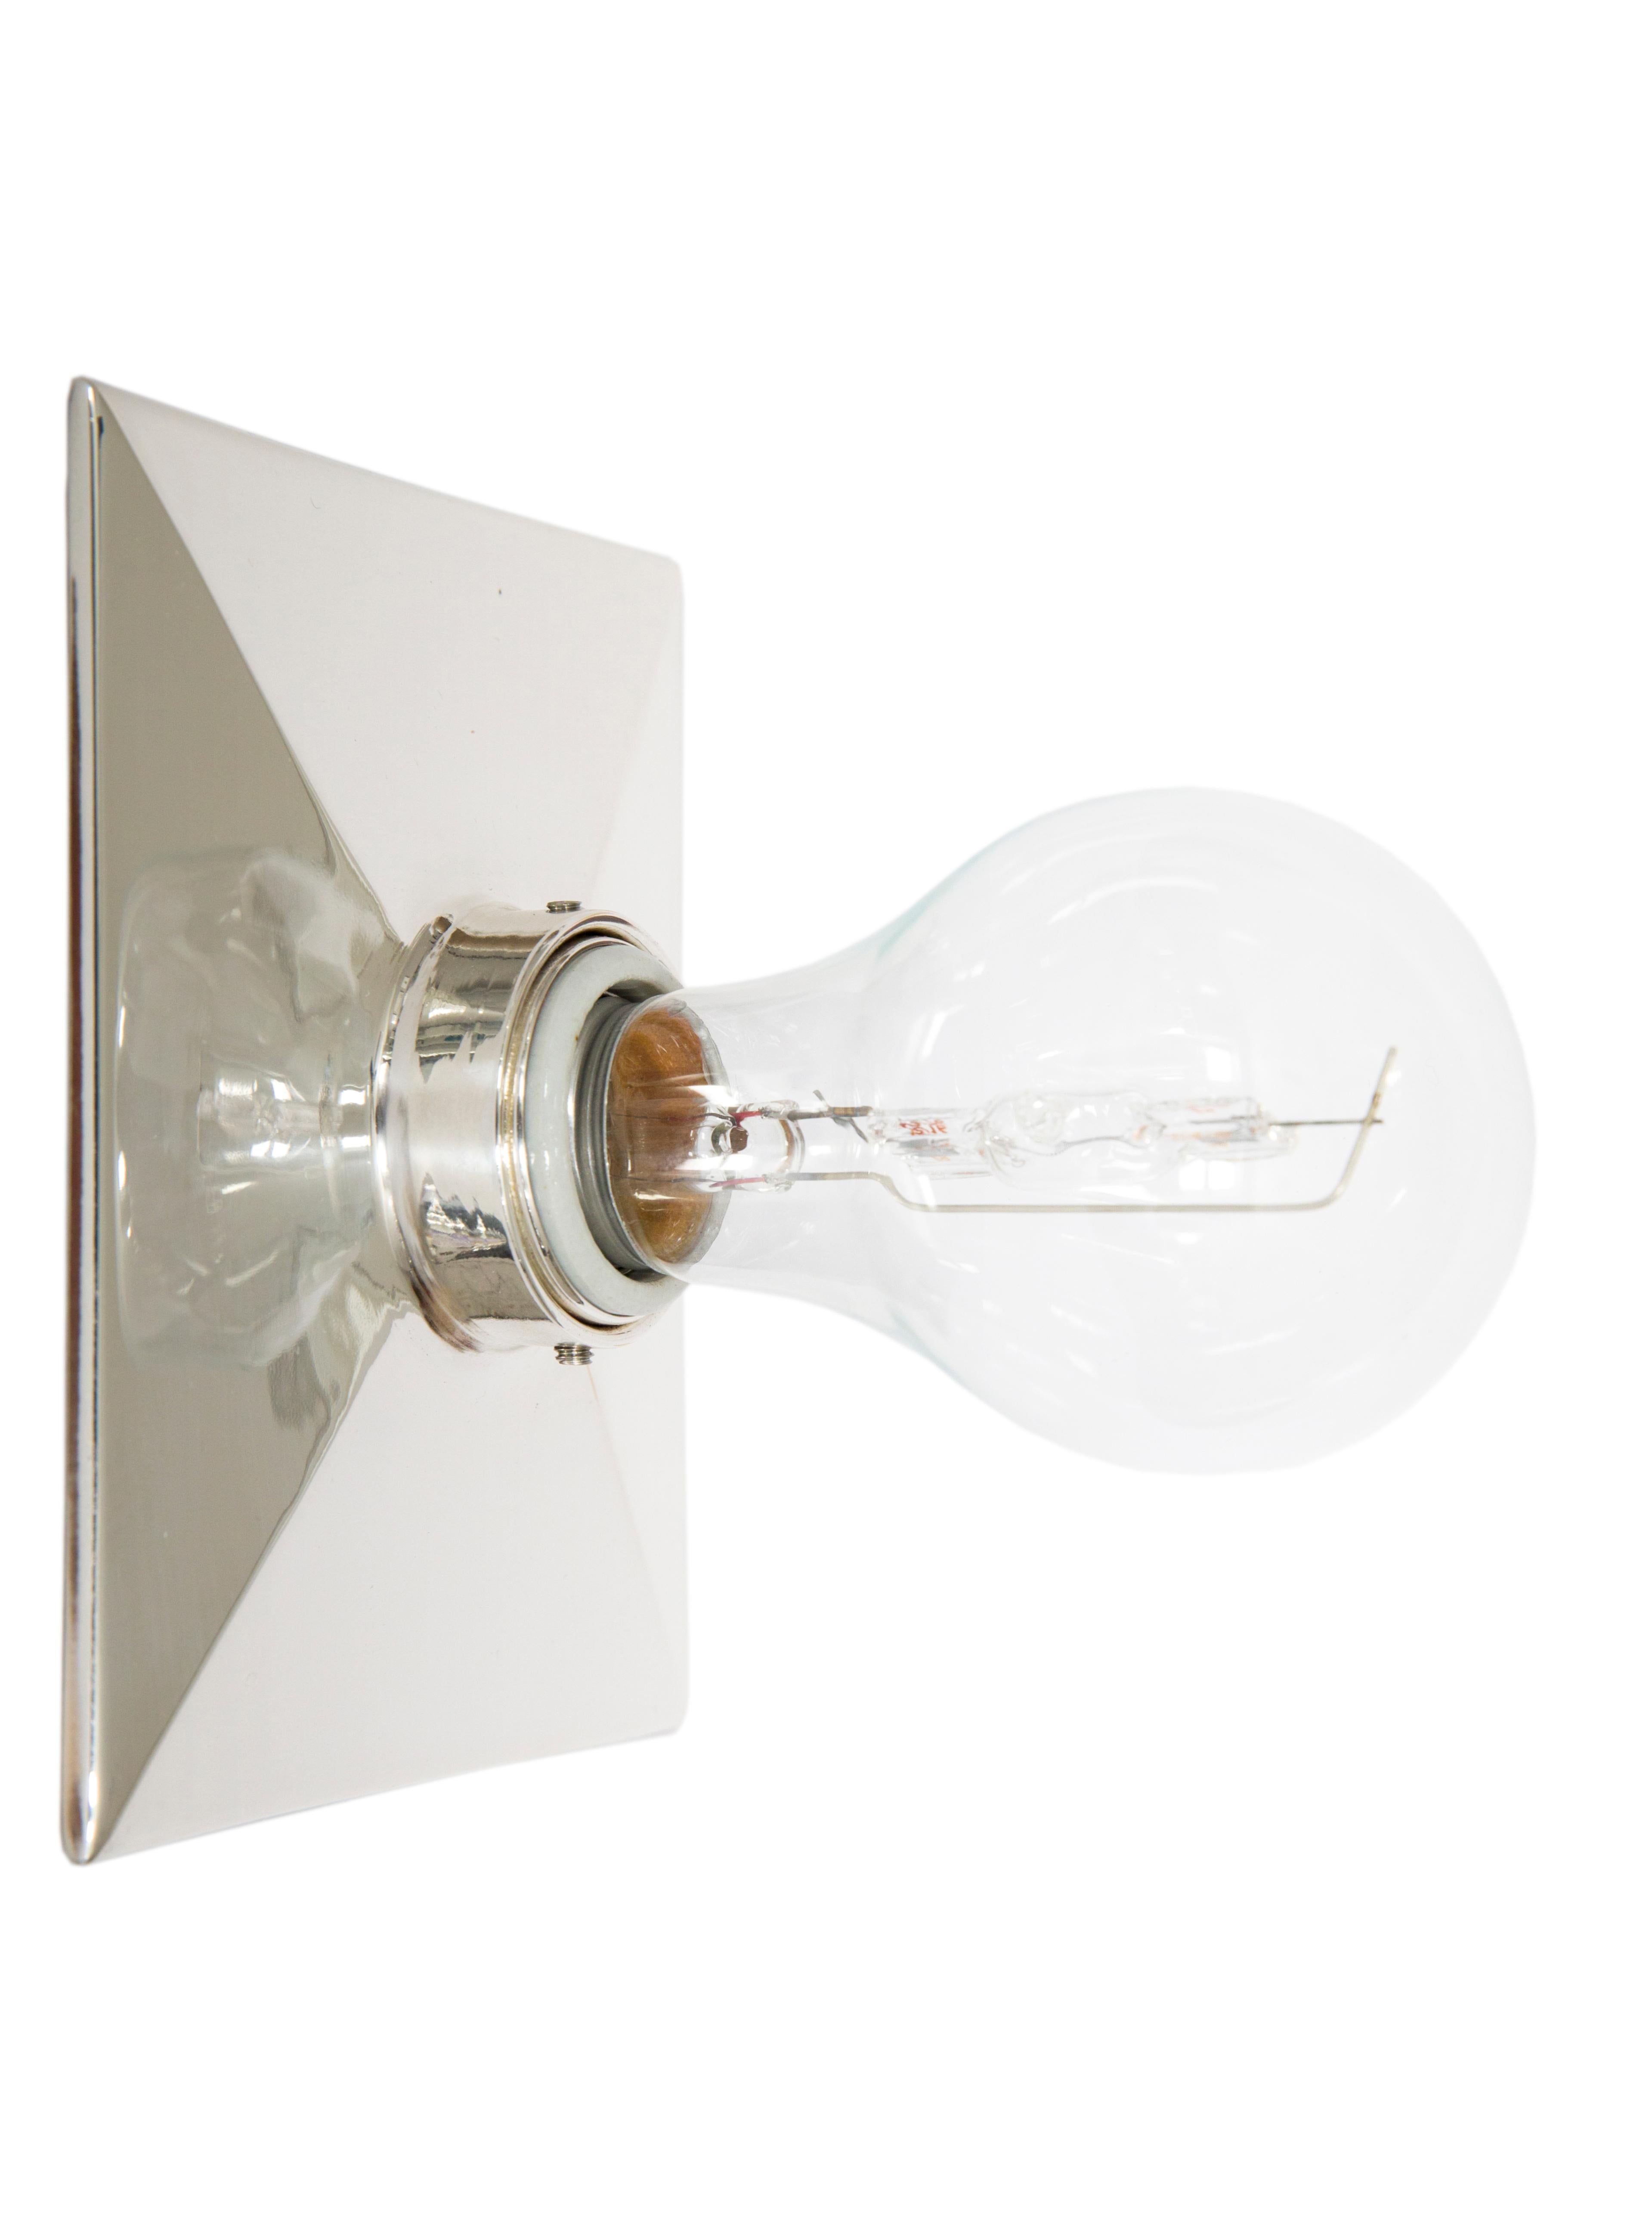 La lampe Vica est une plaque de protection rectangulaire en métal moulé avec un bord biseauté et une douille en porcelaine.  Le luminaire peut être fixé au mur ou au plafond. 

La puissance maximale recommandée de l'ampoule est de 60W. La lampe Vica